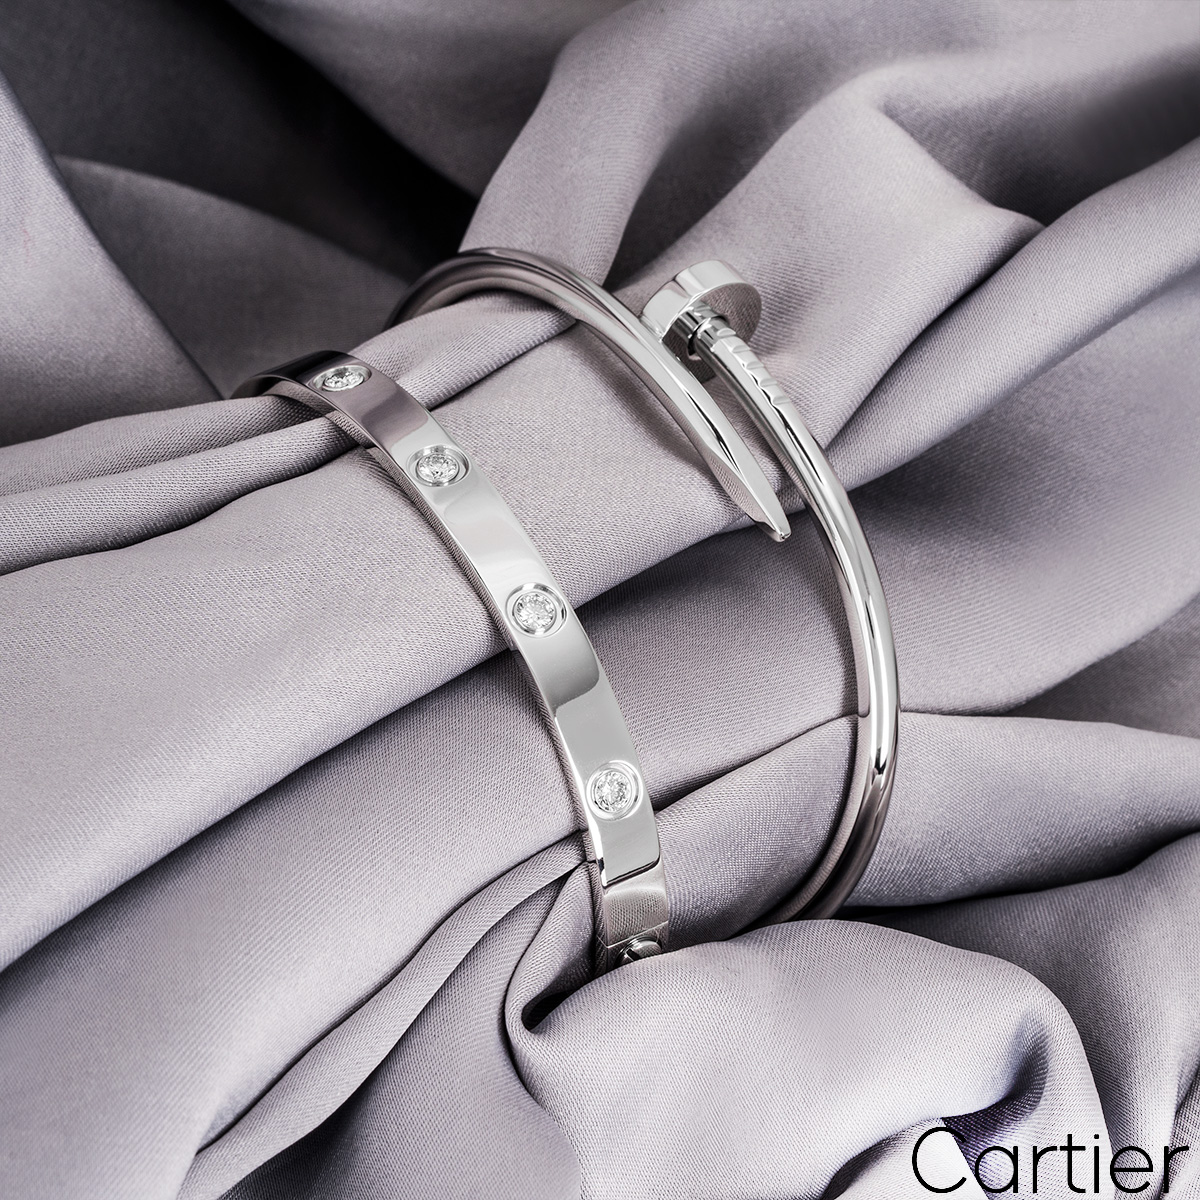 Cartier White Gold Full Diamond Love Bracelet Size 16 B6040716